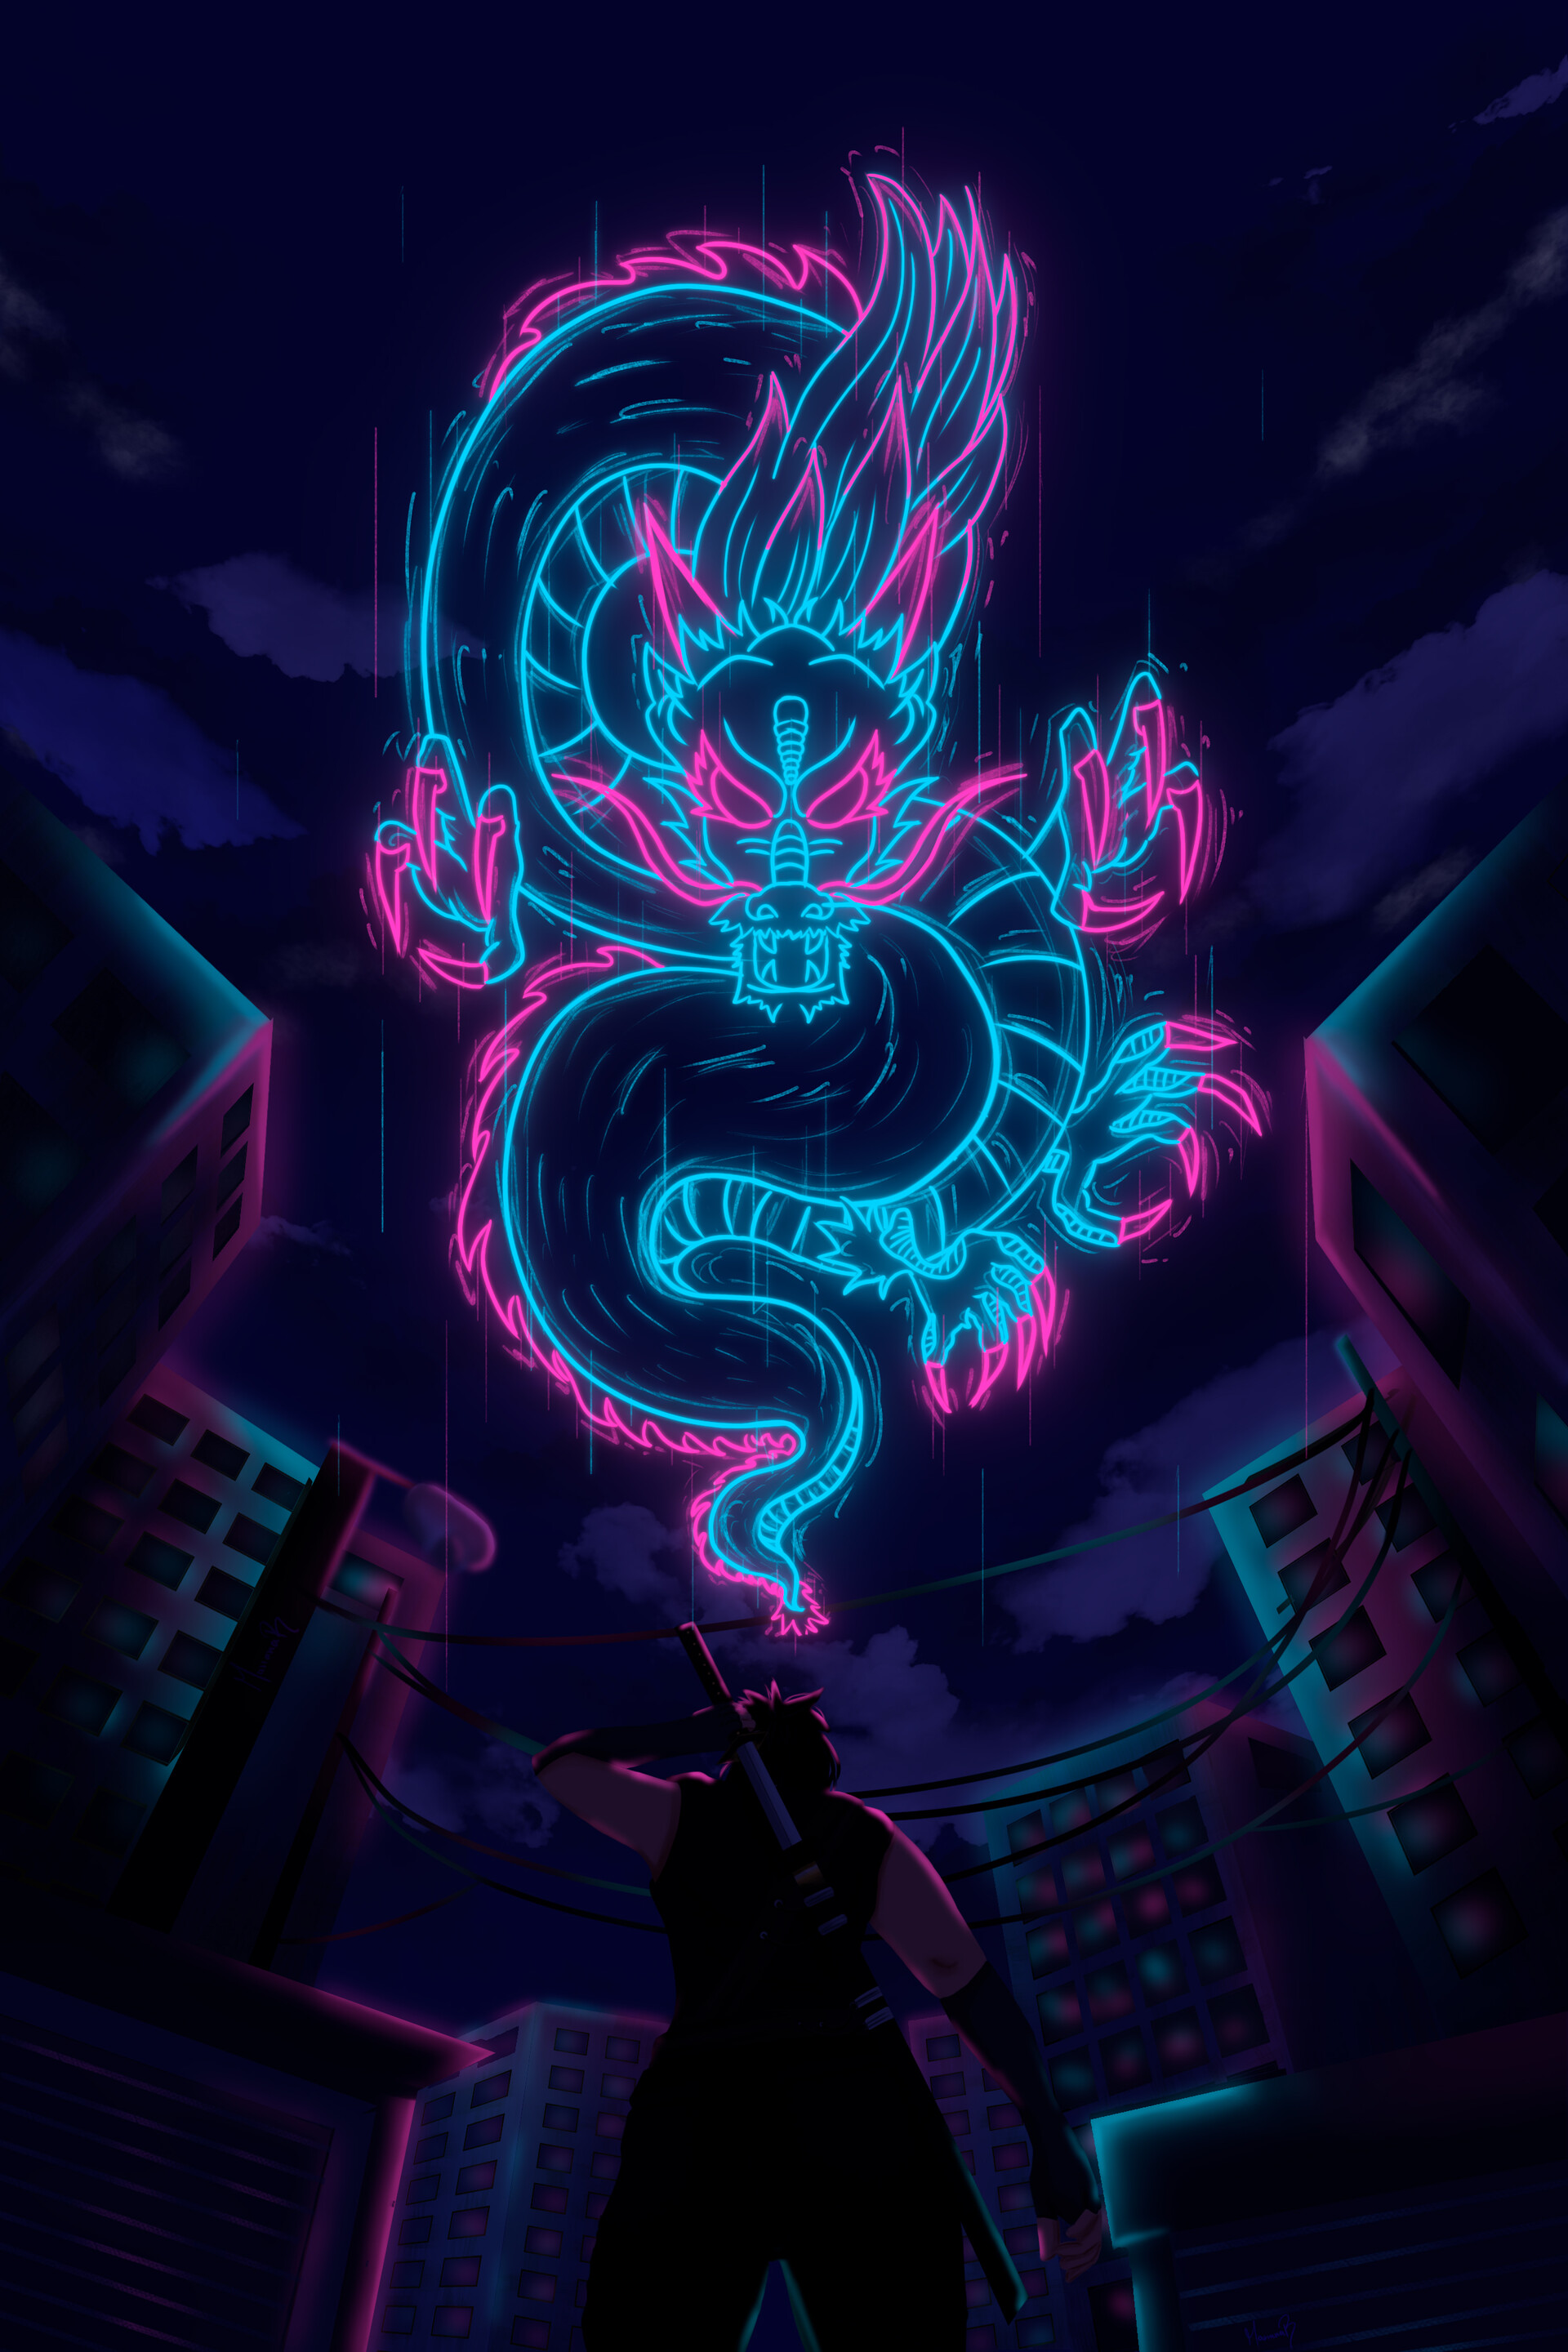 ArtStation - Neon Dragon